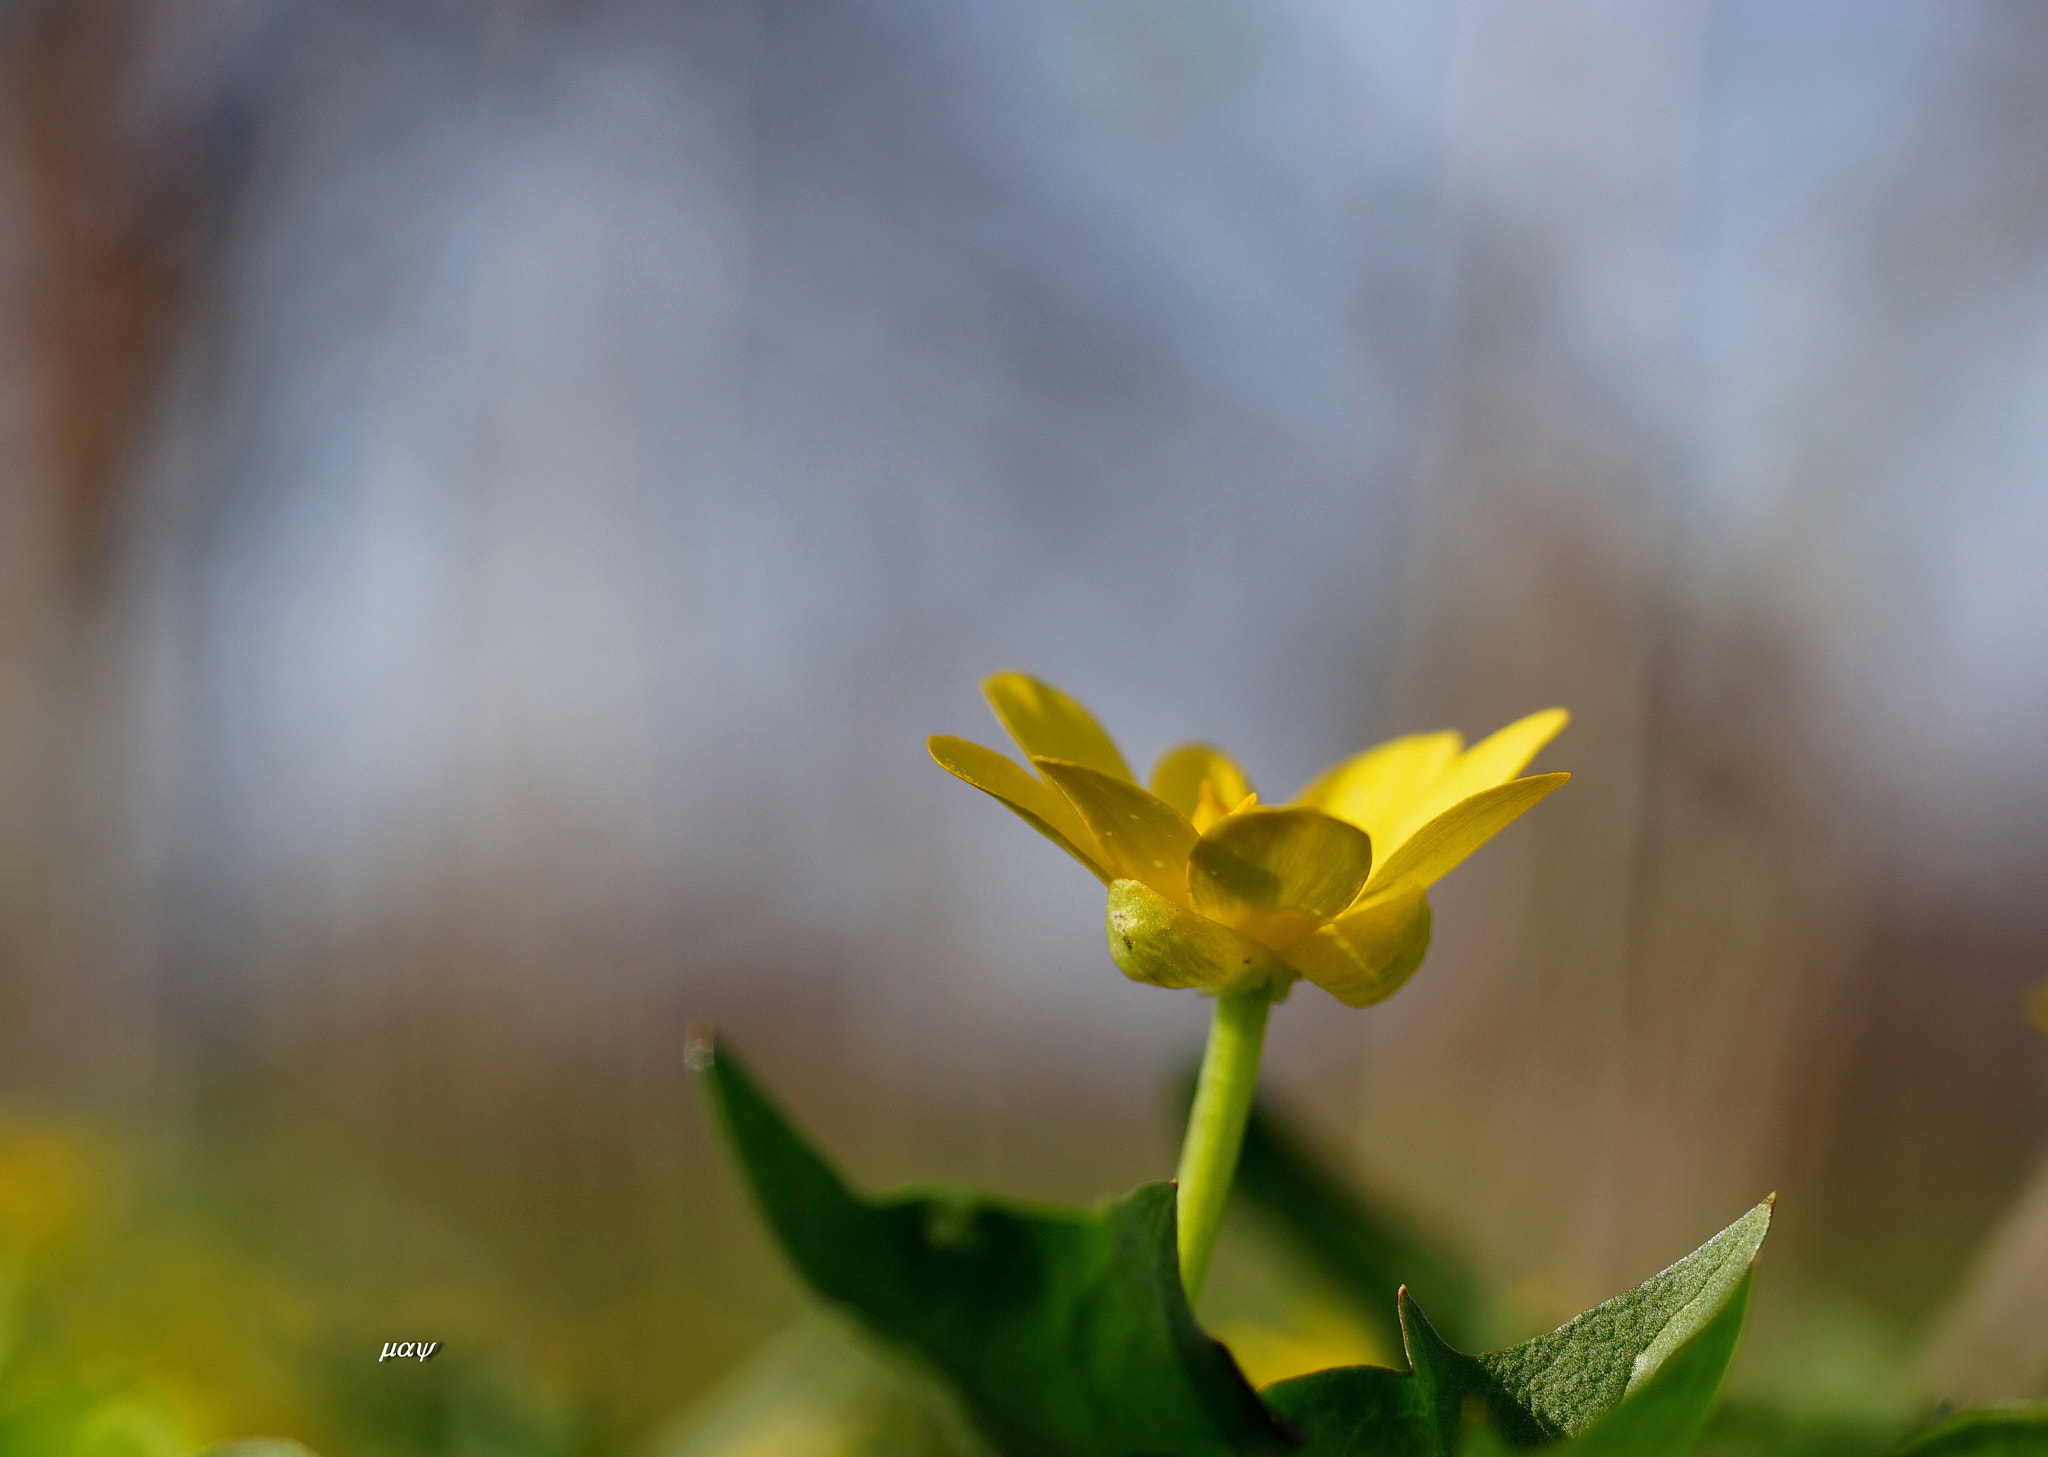 Sony SLT-A65 (SLT-A65V) + Minolta AF 50mm F1.7 sample photo. Spring flower photography